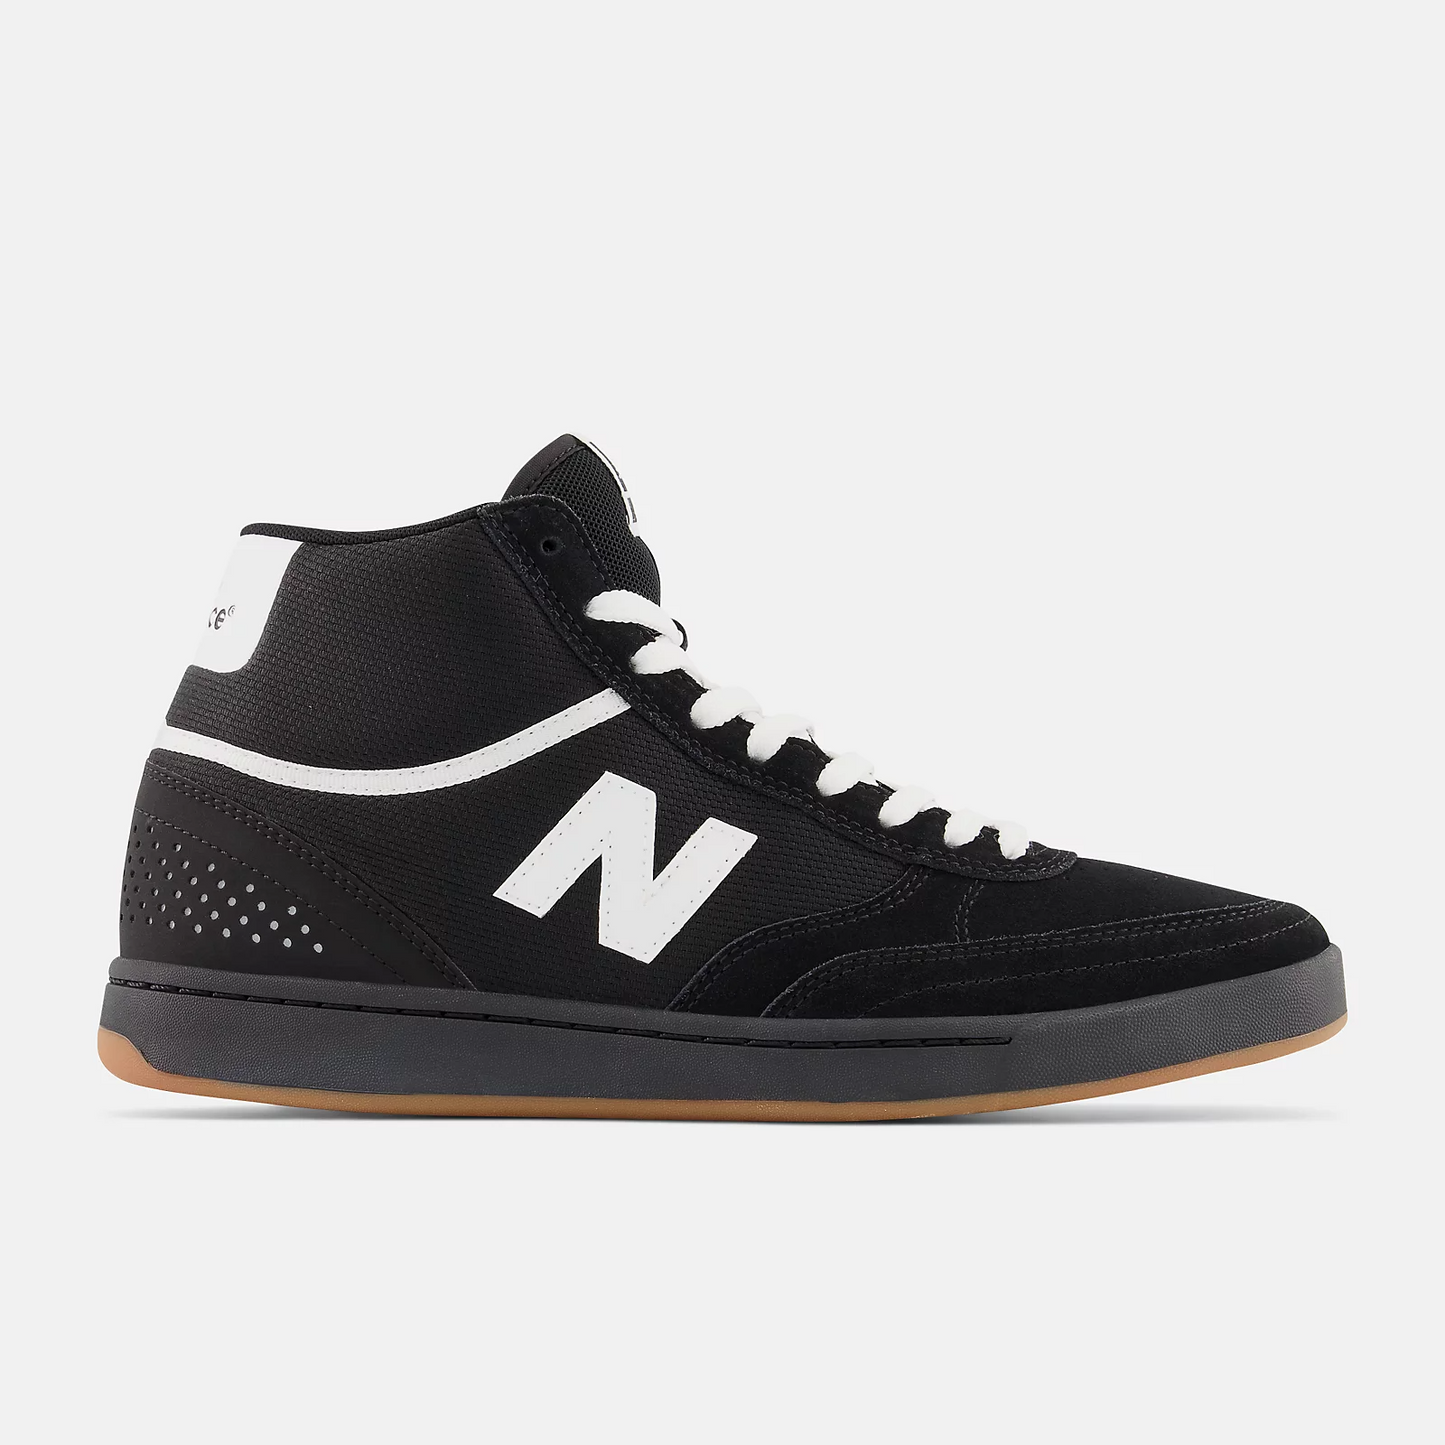 NB Numeric 440 Hi Shoes